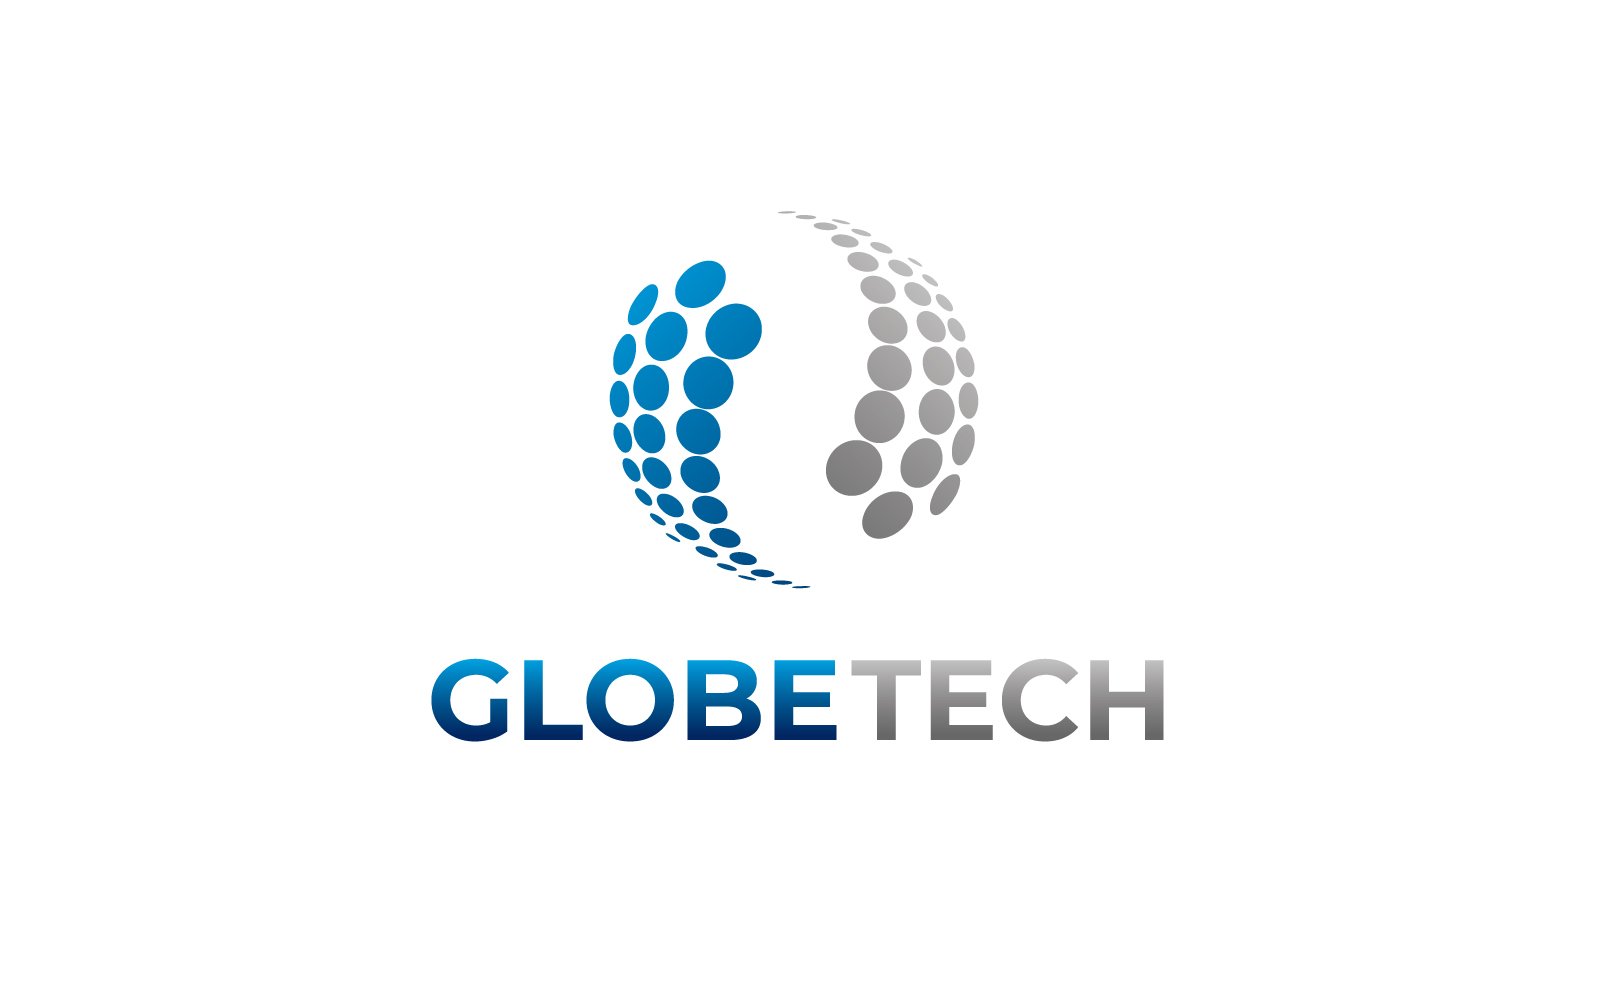 Kit Graphique #352162 Globe Tech Divers Modles Web - Logo template Preview